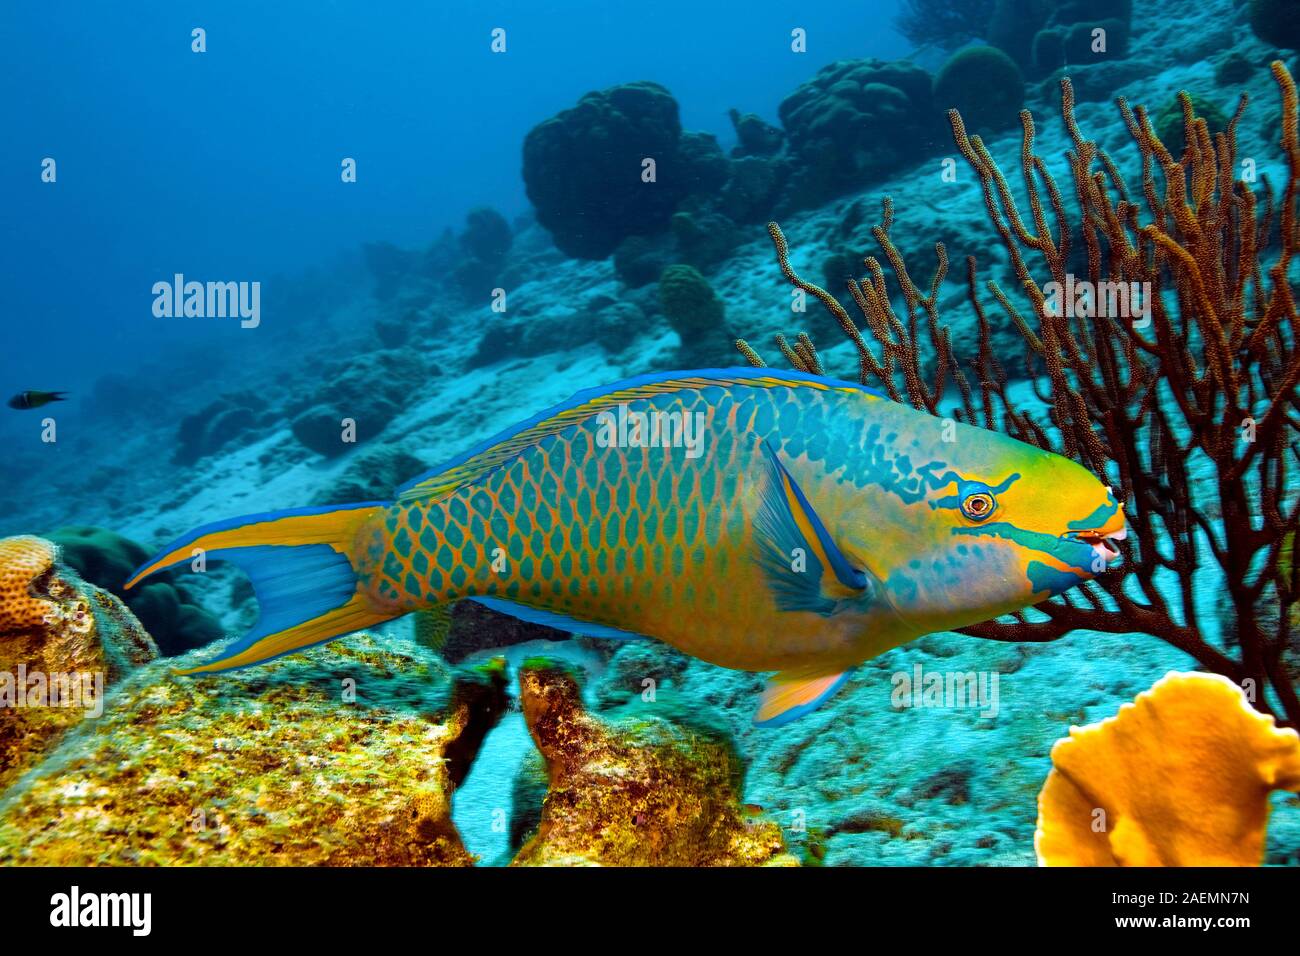 Perroquet (Scarus vetula Queen), natation dans une barrière de corail, Bonaire, Antilles néerlandaises, Caraïbes Banque D'Images